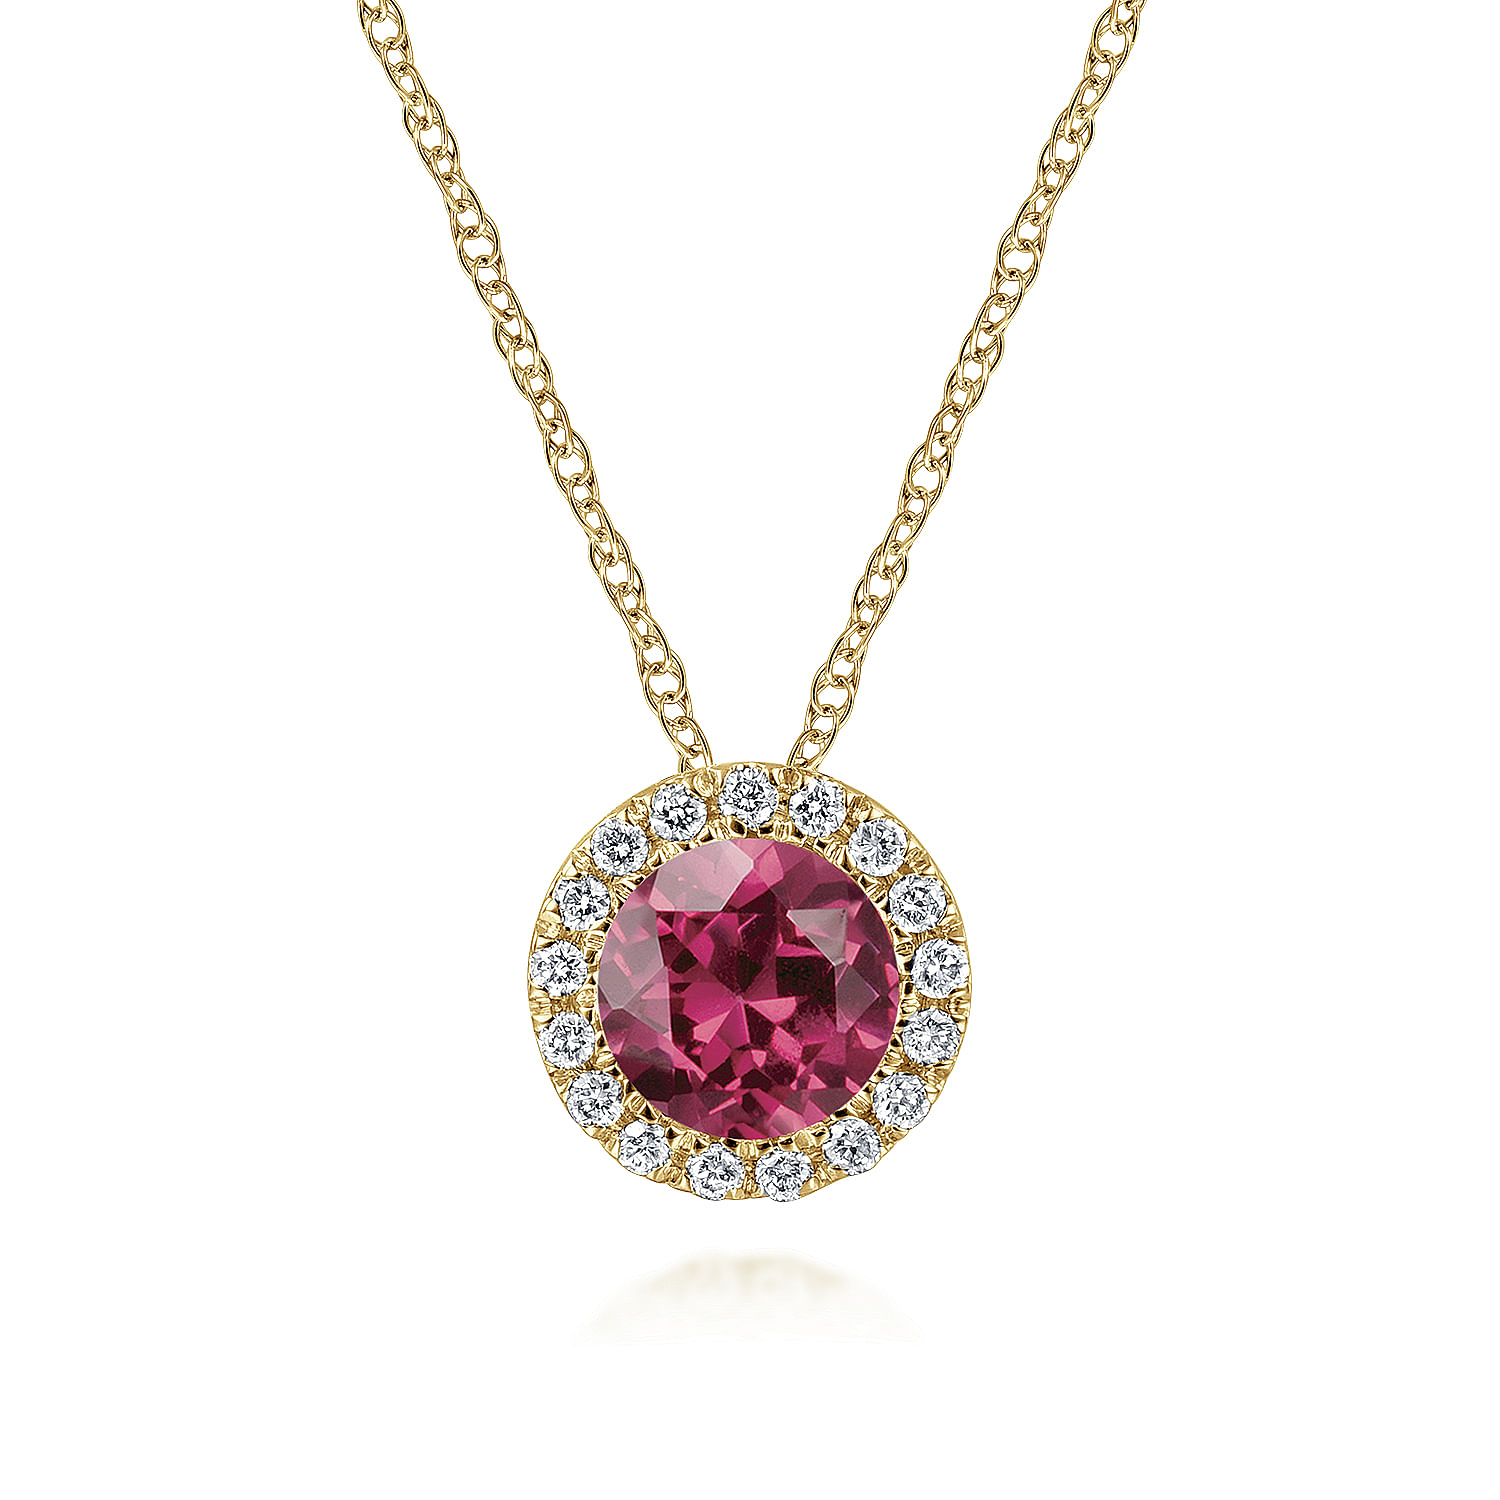 14k Yellow Gold Round Cut Diamond Halo & Pink Tourmaline Pendant Necklace
